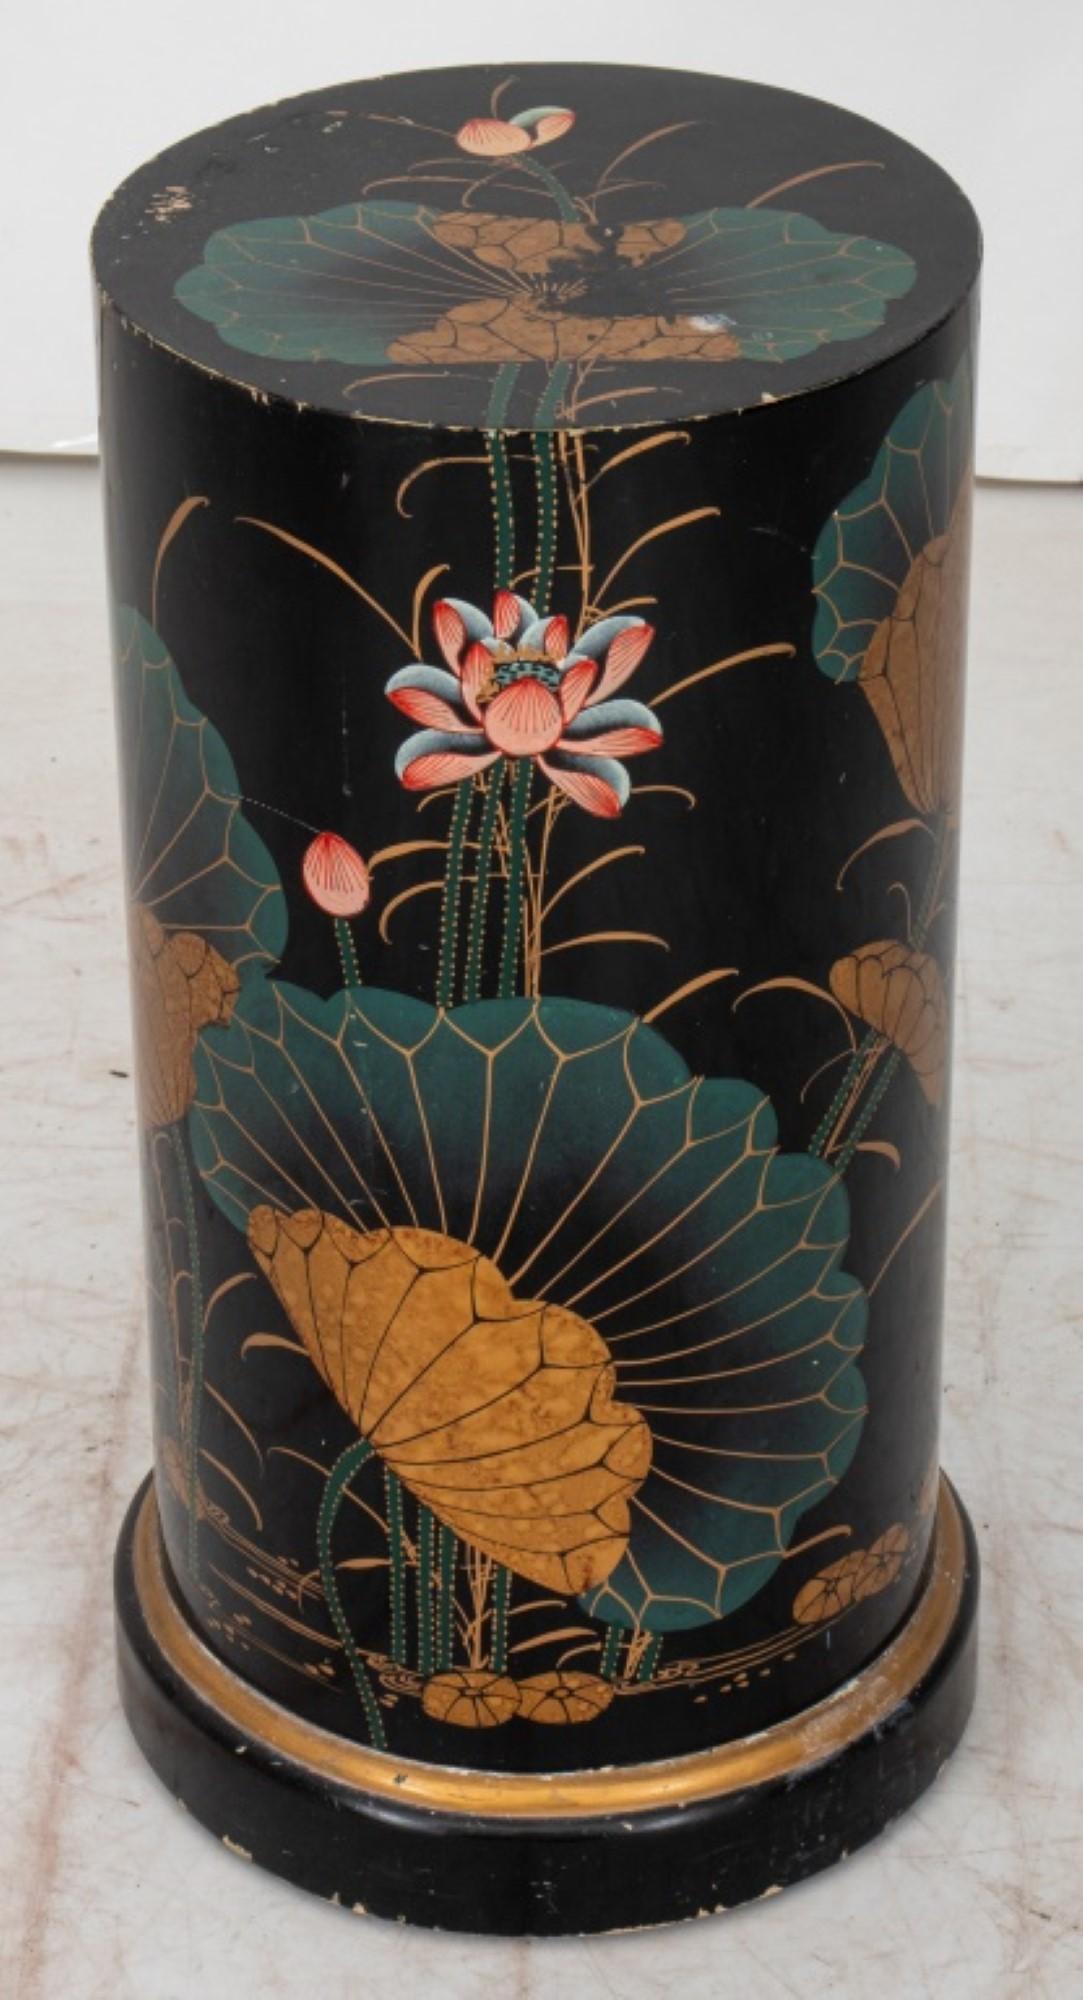 Colonne à piédestal en bois laqué de style chinois avec un motif d'oiseaux et de nénuphars.

Concessionnaire : S138XX